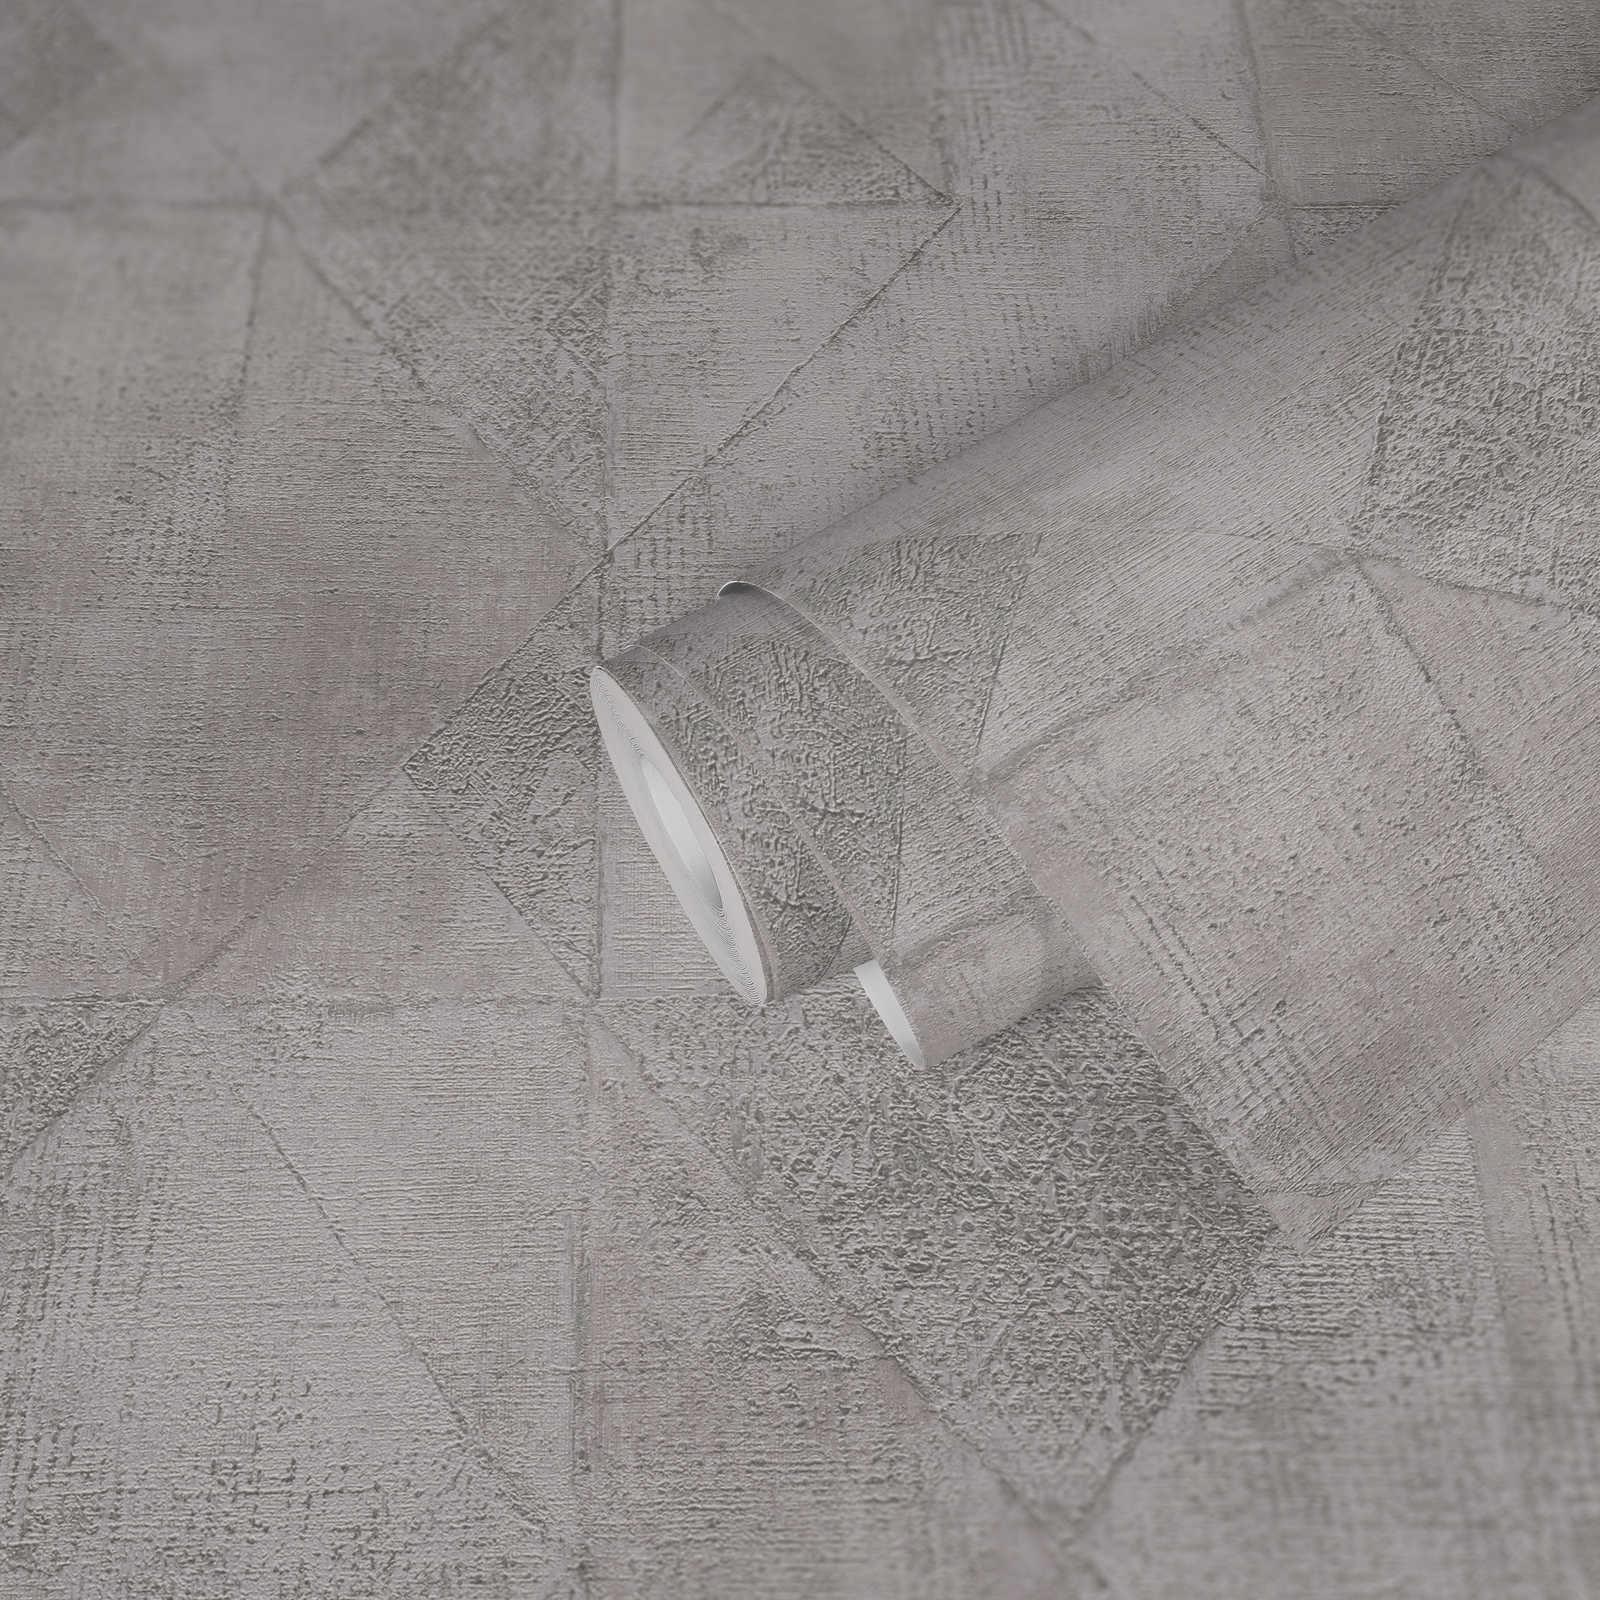             Onderlaag behang met grafisch driehoekpatroon metallic glanzend structuur - grijs, zilver
        